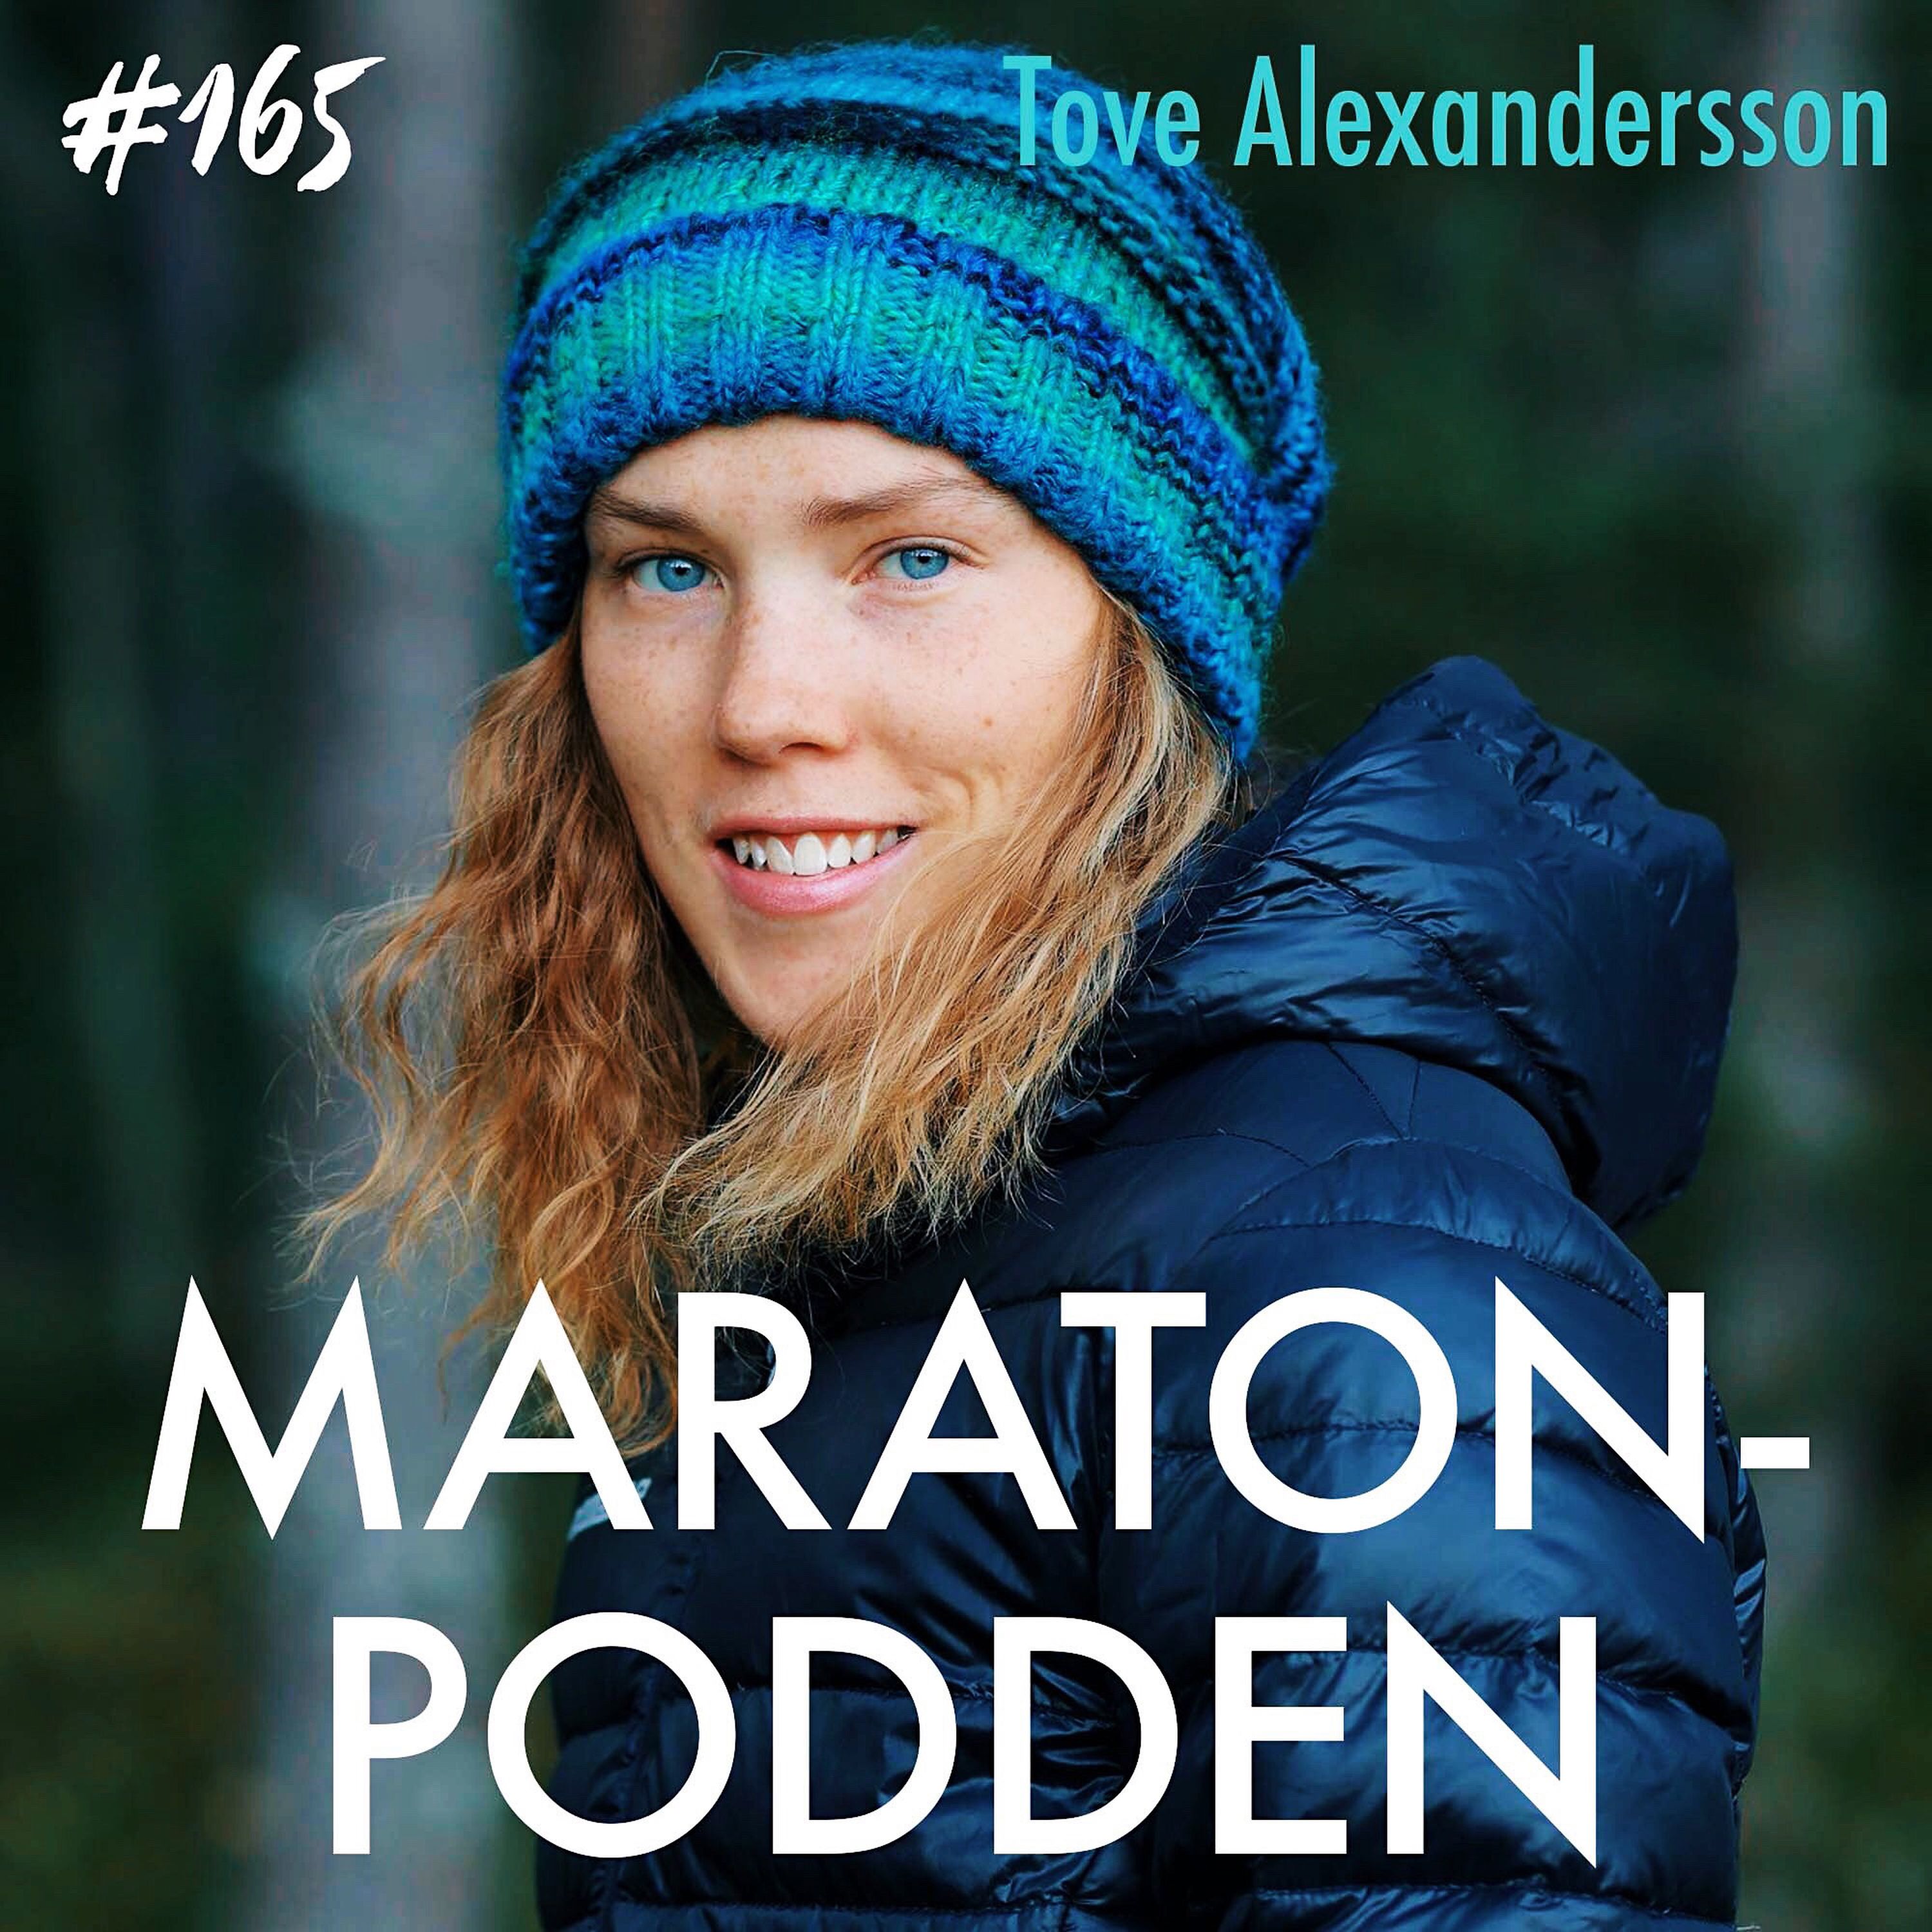 #165: Tove Alexandersson, flickan med guldlungorna